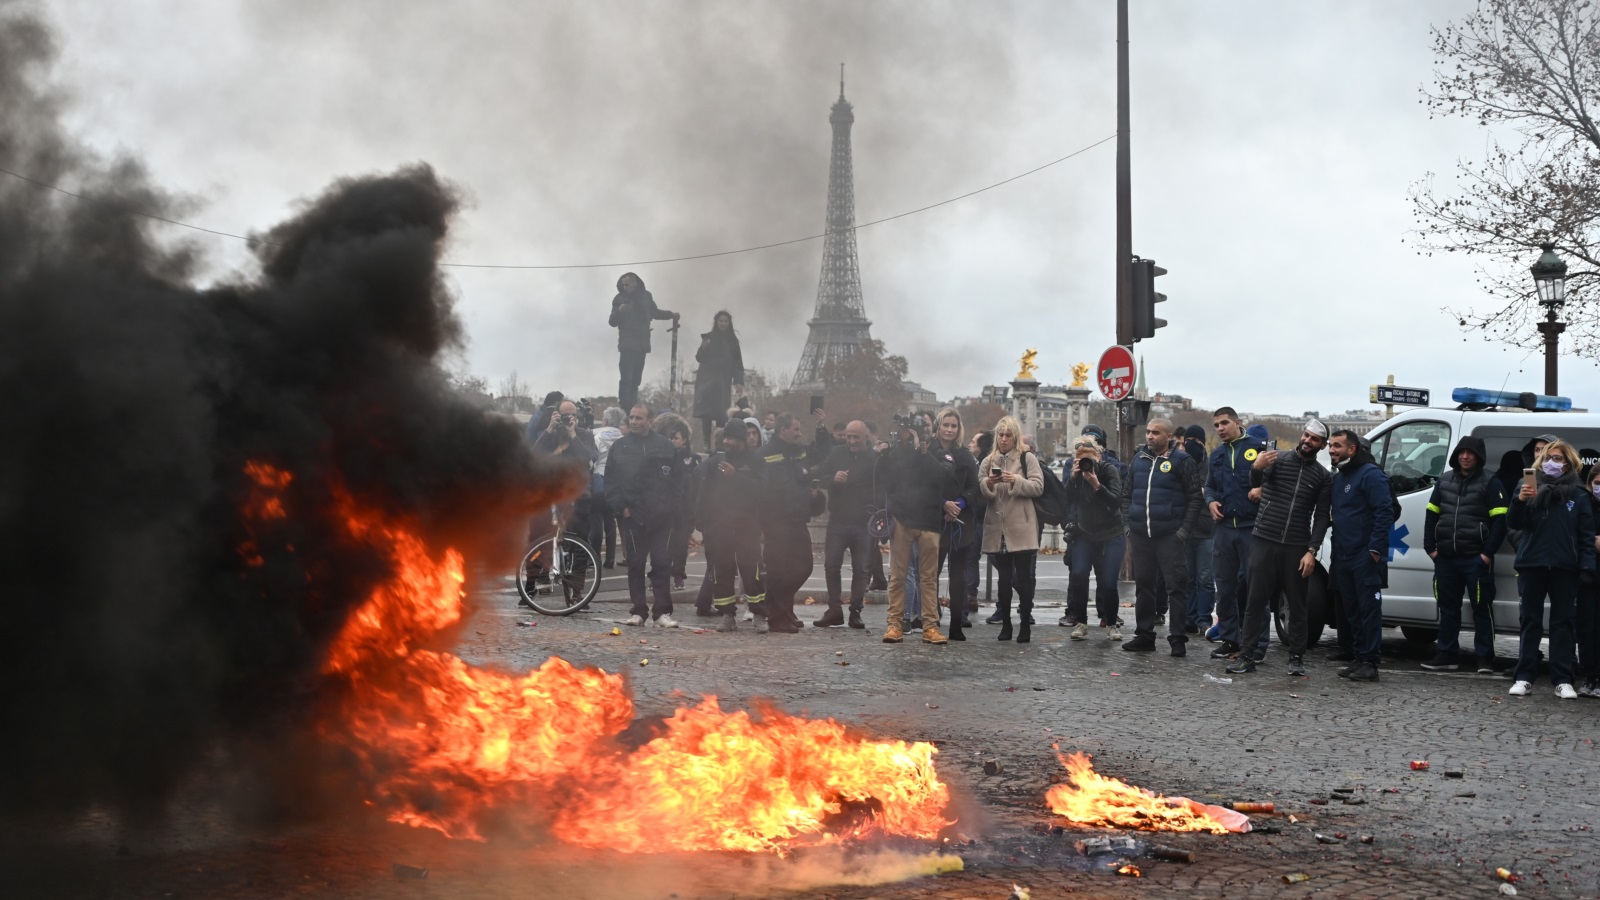 ‪متظاهرون يضرمون النار في إطار السيارات وسط باريس‬  متظاهرون يضرمون النار في إطار السيارات وسط باريس (الأناضول)